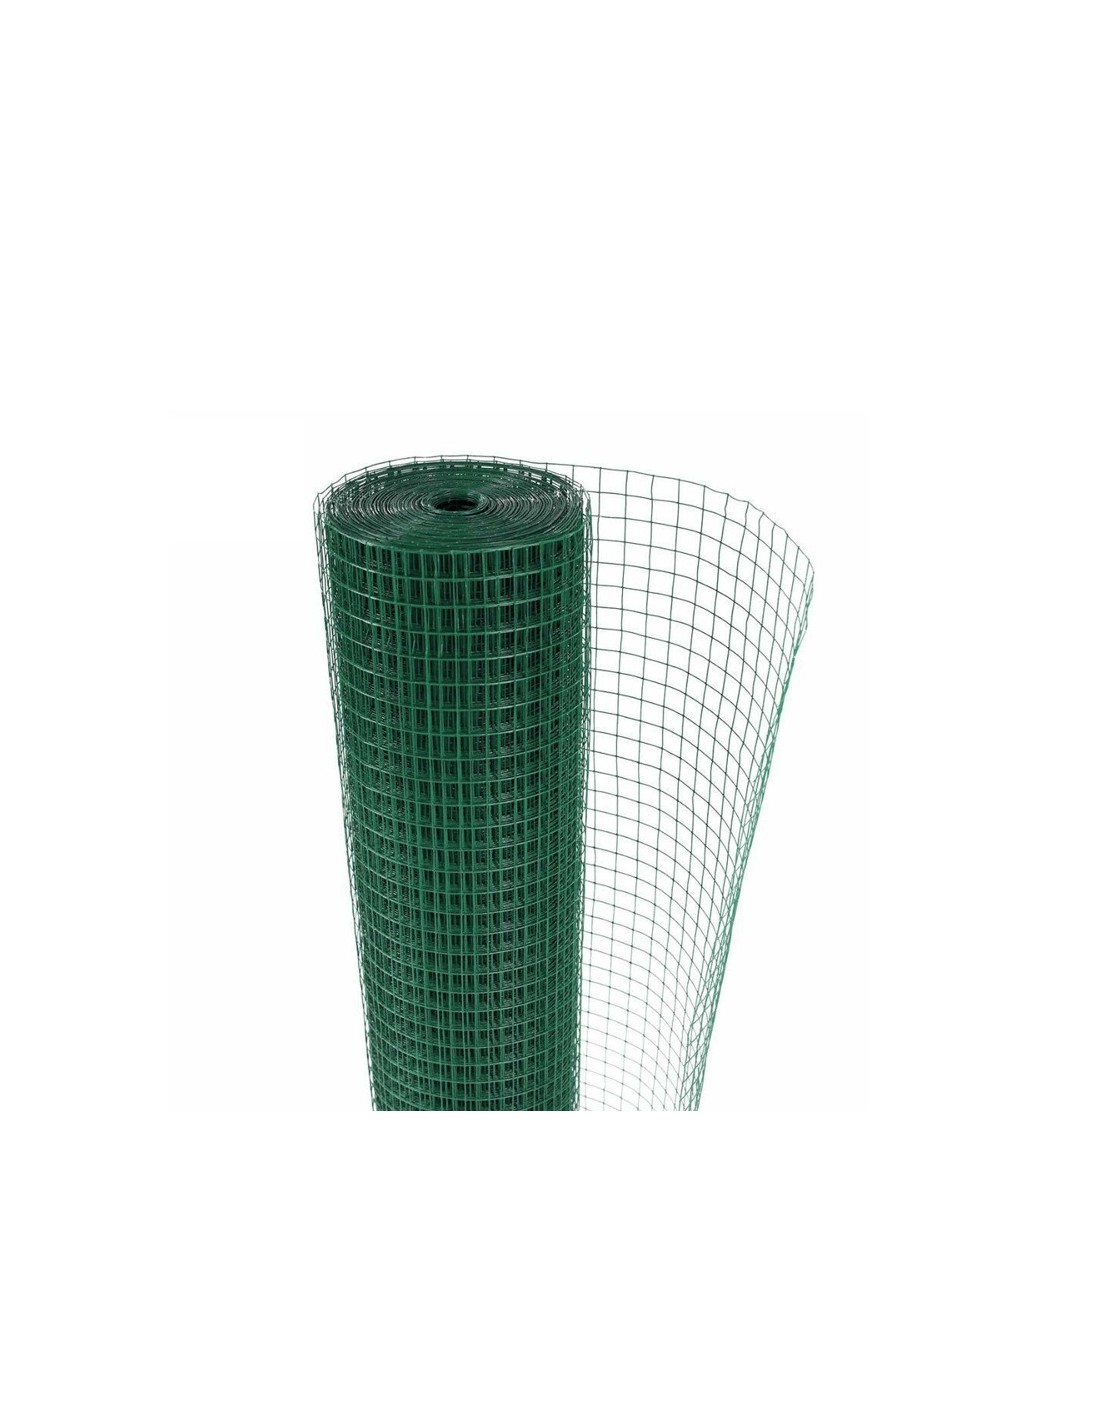 HYPER BRICO Grillage Plastifié Vert SECURITE Ø fil 2,2/2,7 mm Maille 76 x  76 mm